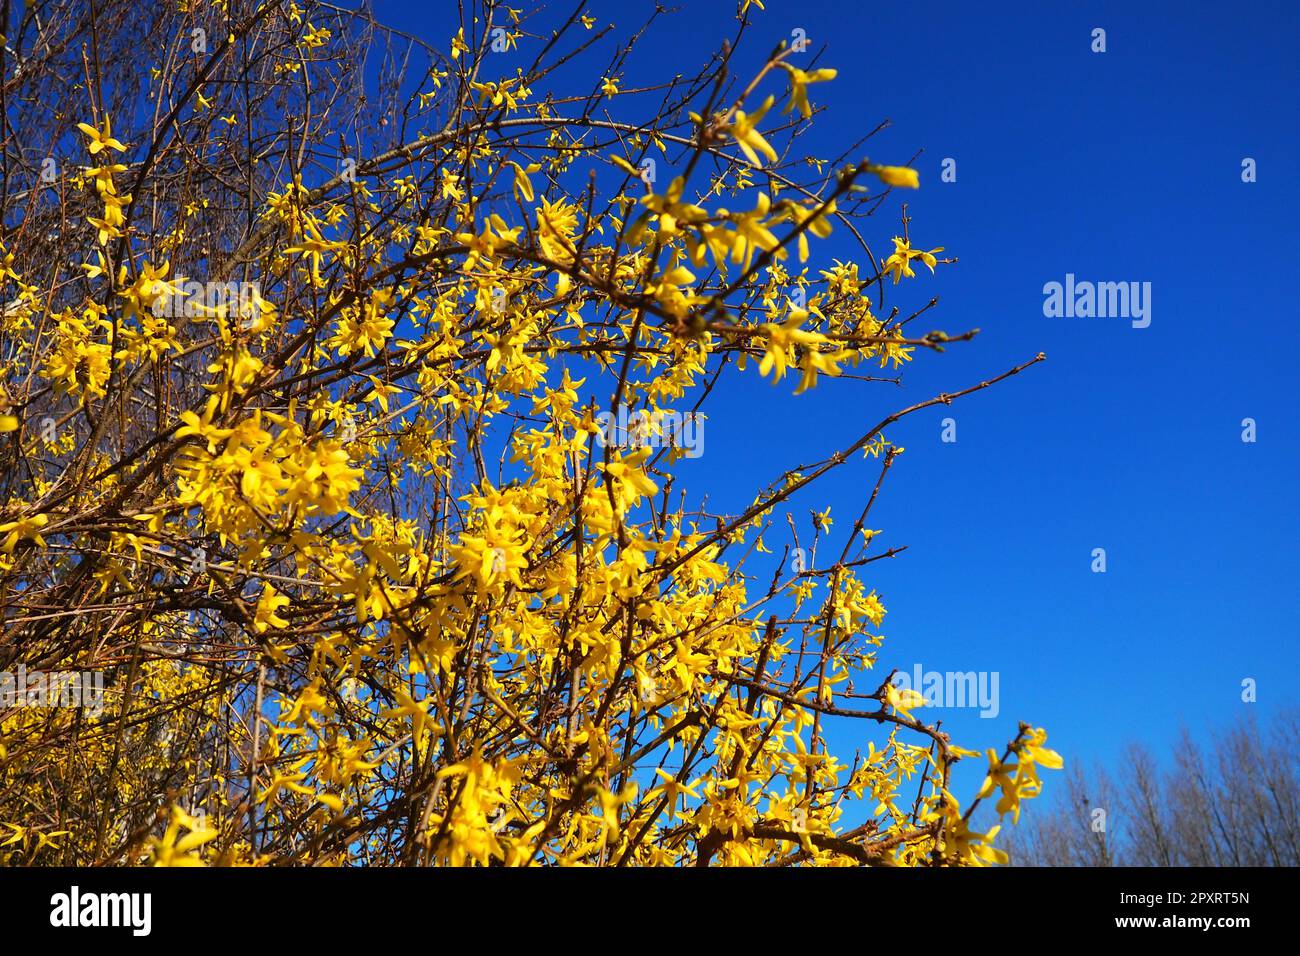 Forsythia est un genre d'arbustes et de petits arbres de la famille des oliviers. De nombreuses fleurs jaunes sur des branches et des pousses contre un ciel bleu. Lamiaceae Olive Banque D'Images